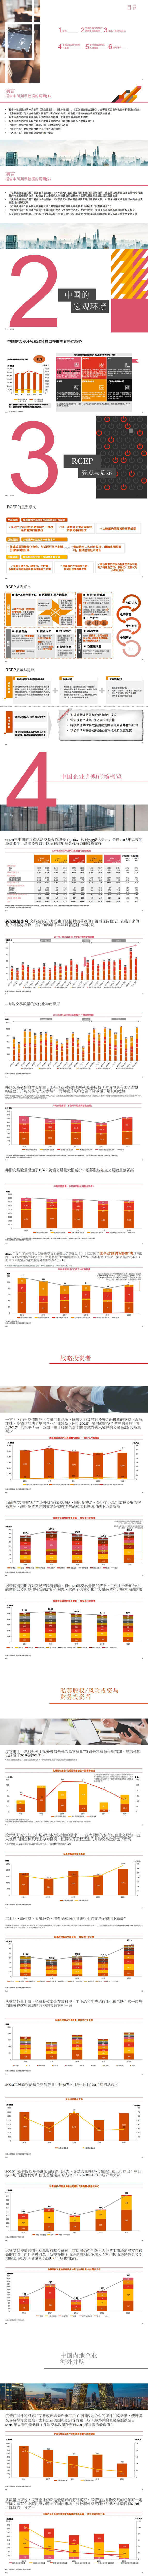 2020年中国企业并购市场回顾与前瞻-PWC-2021.1-48页_0.jpg